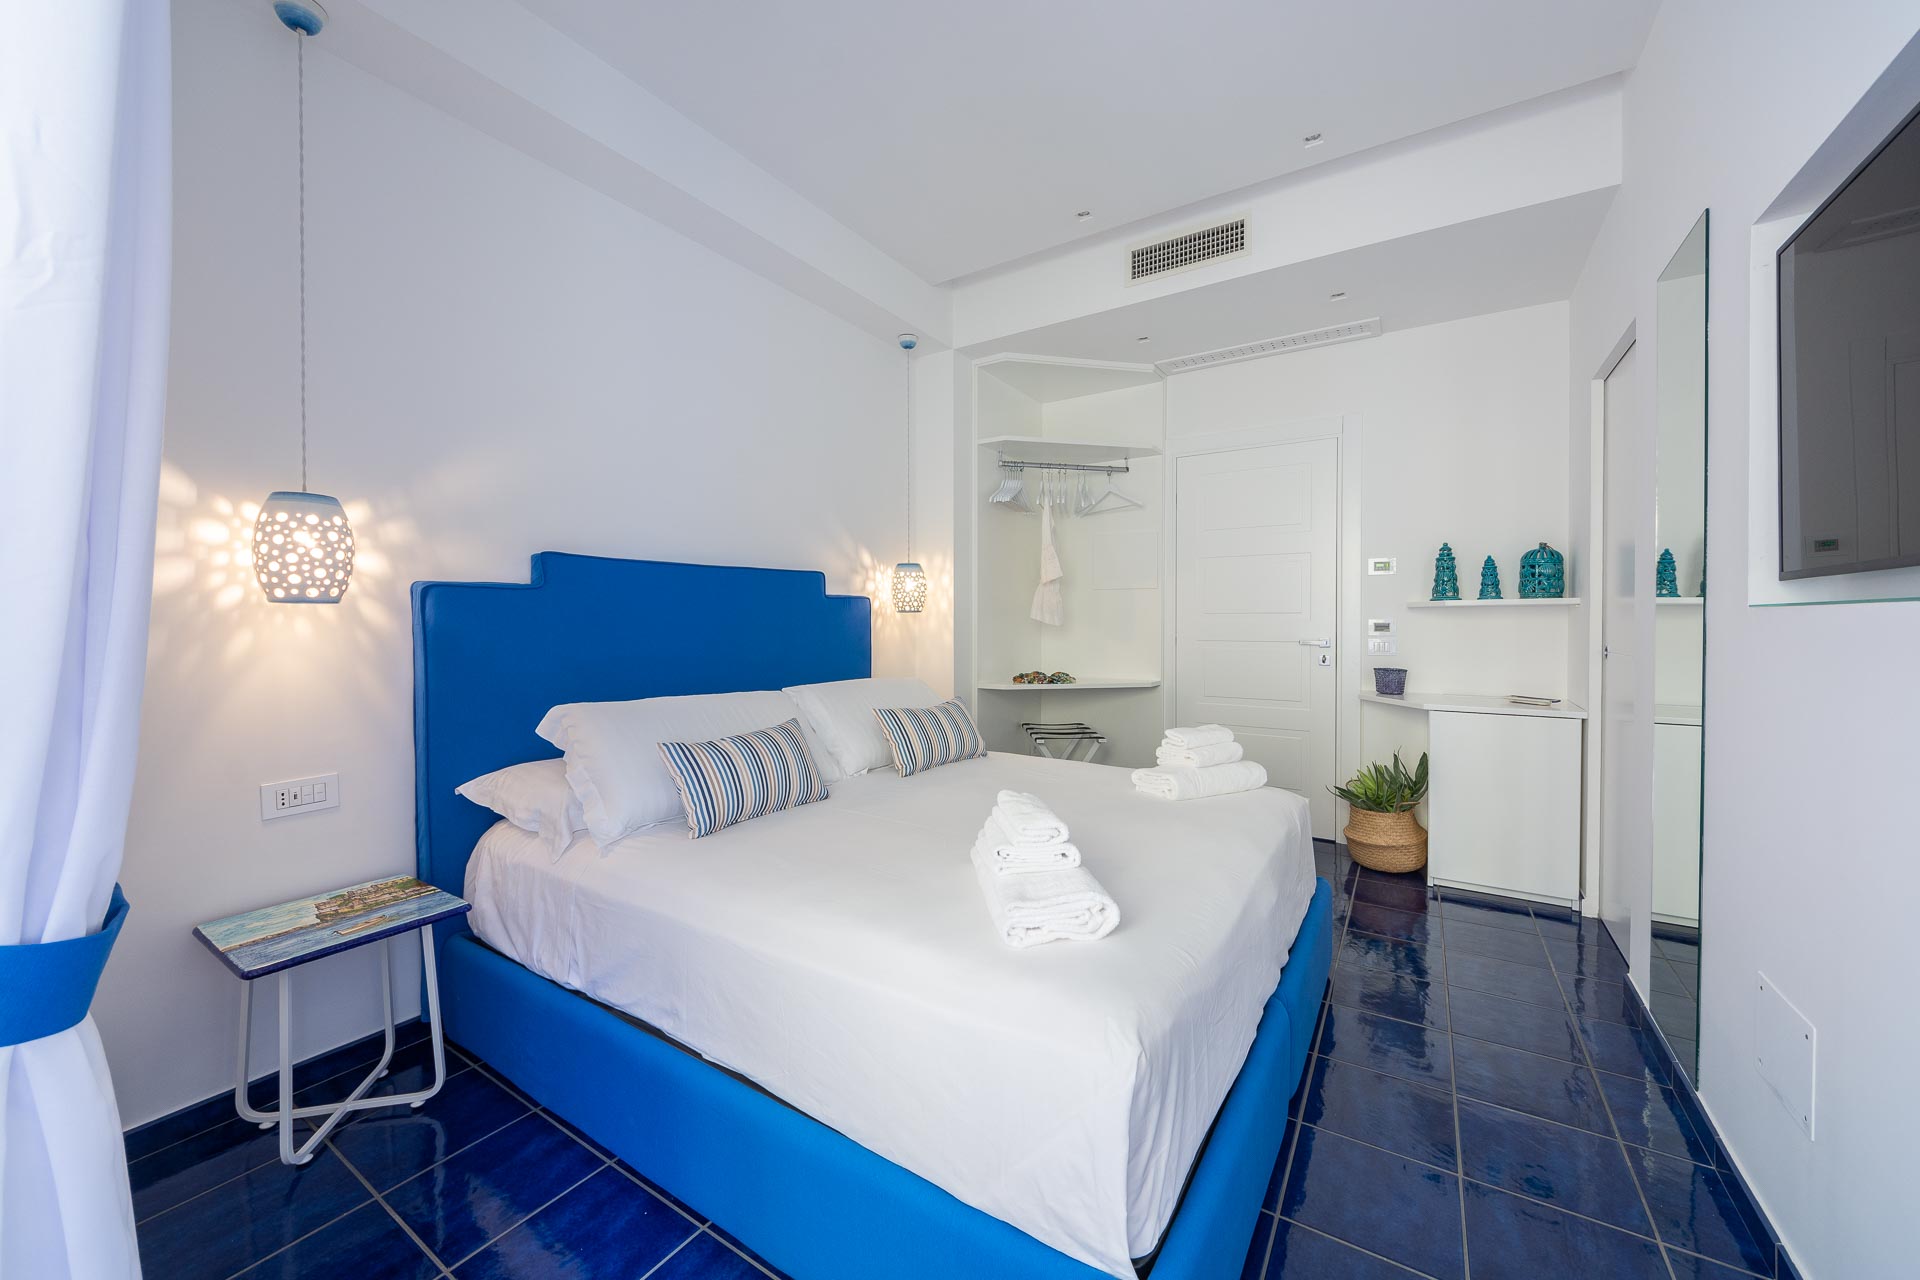 4blu - casa vacanze - maiori - amalfi coast - camere - rooms